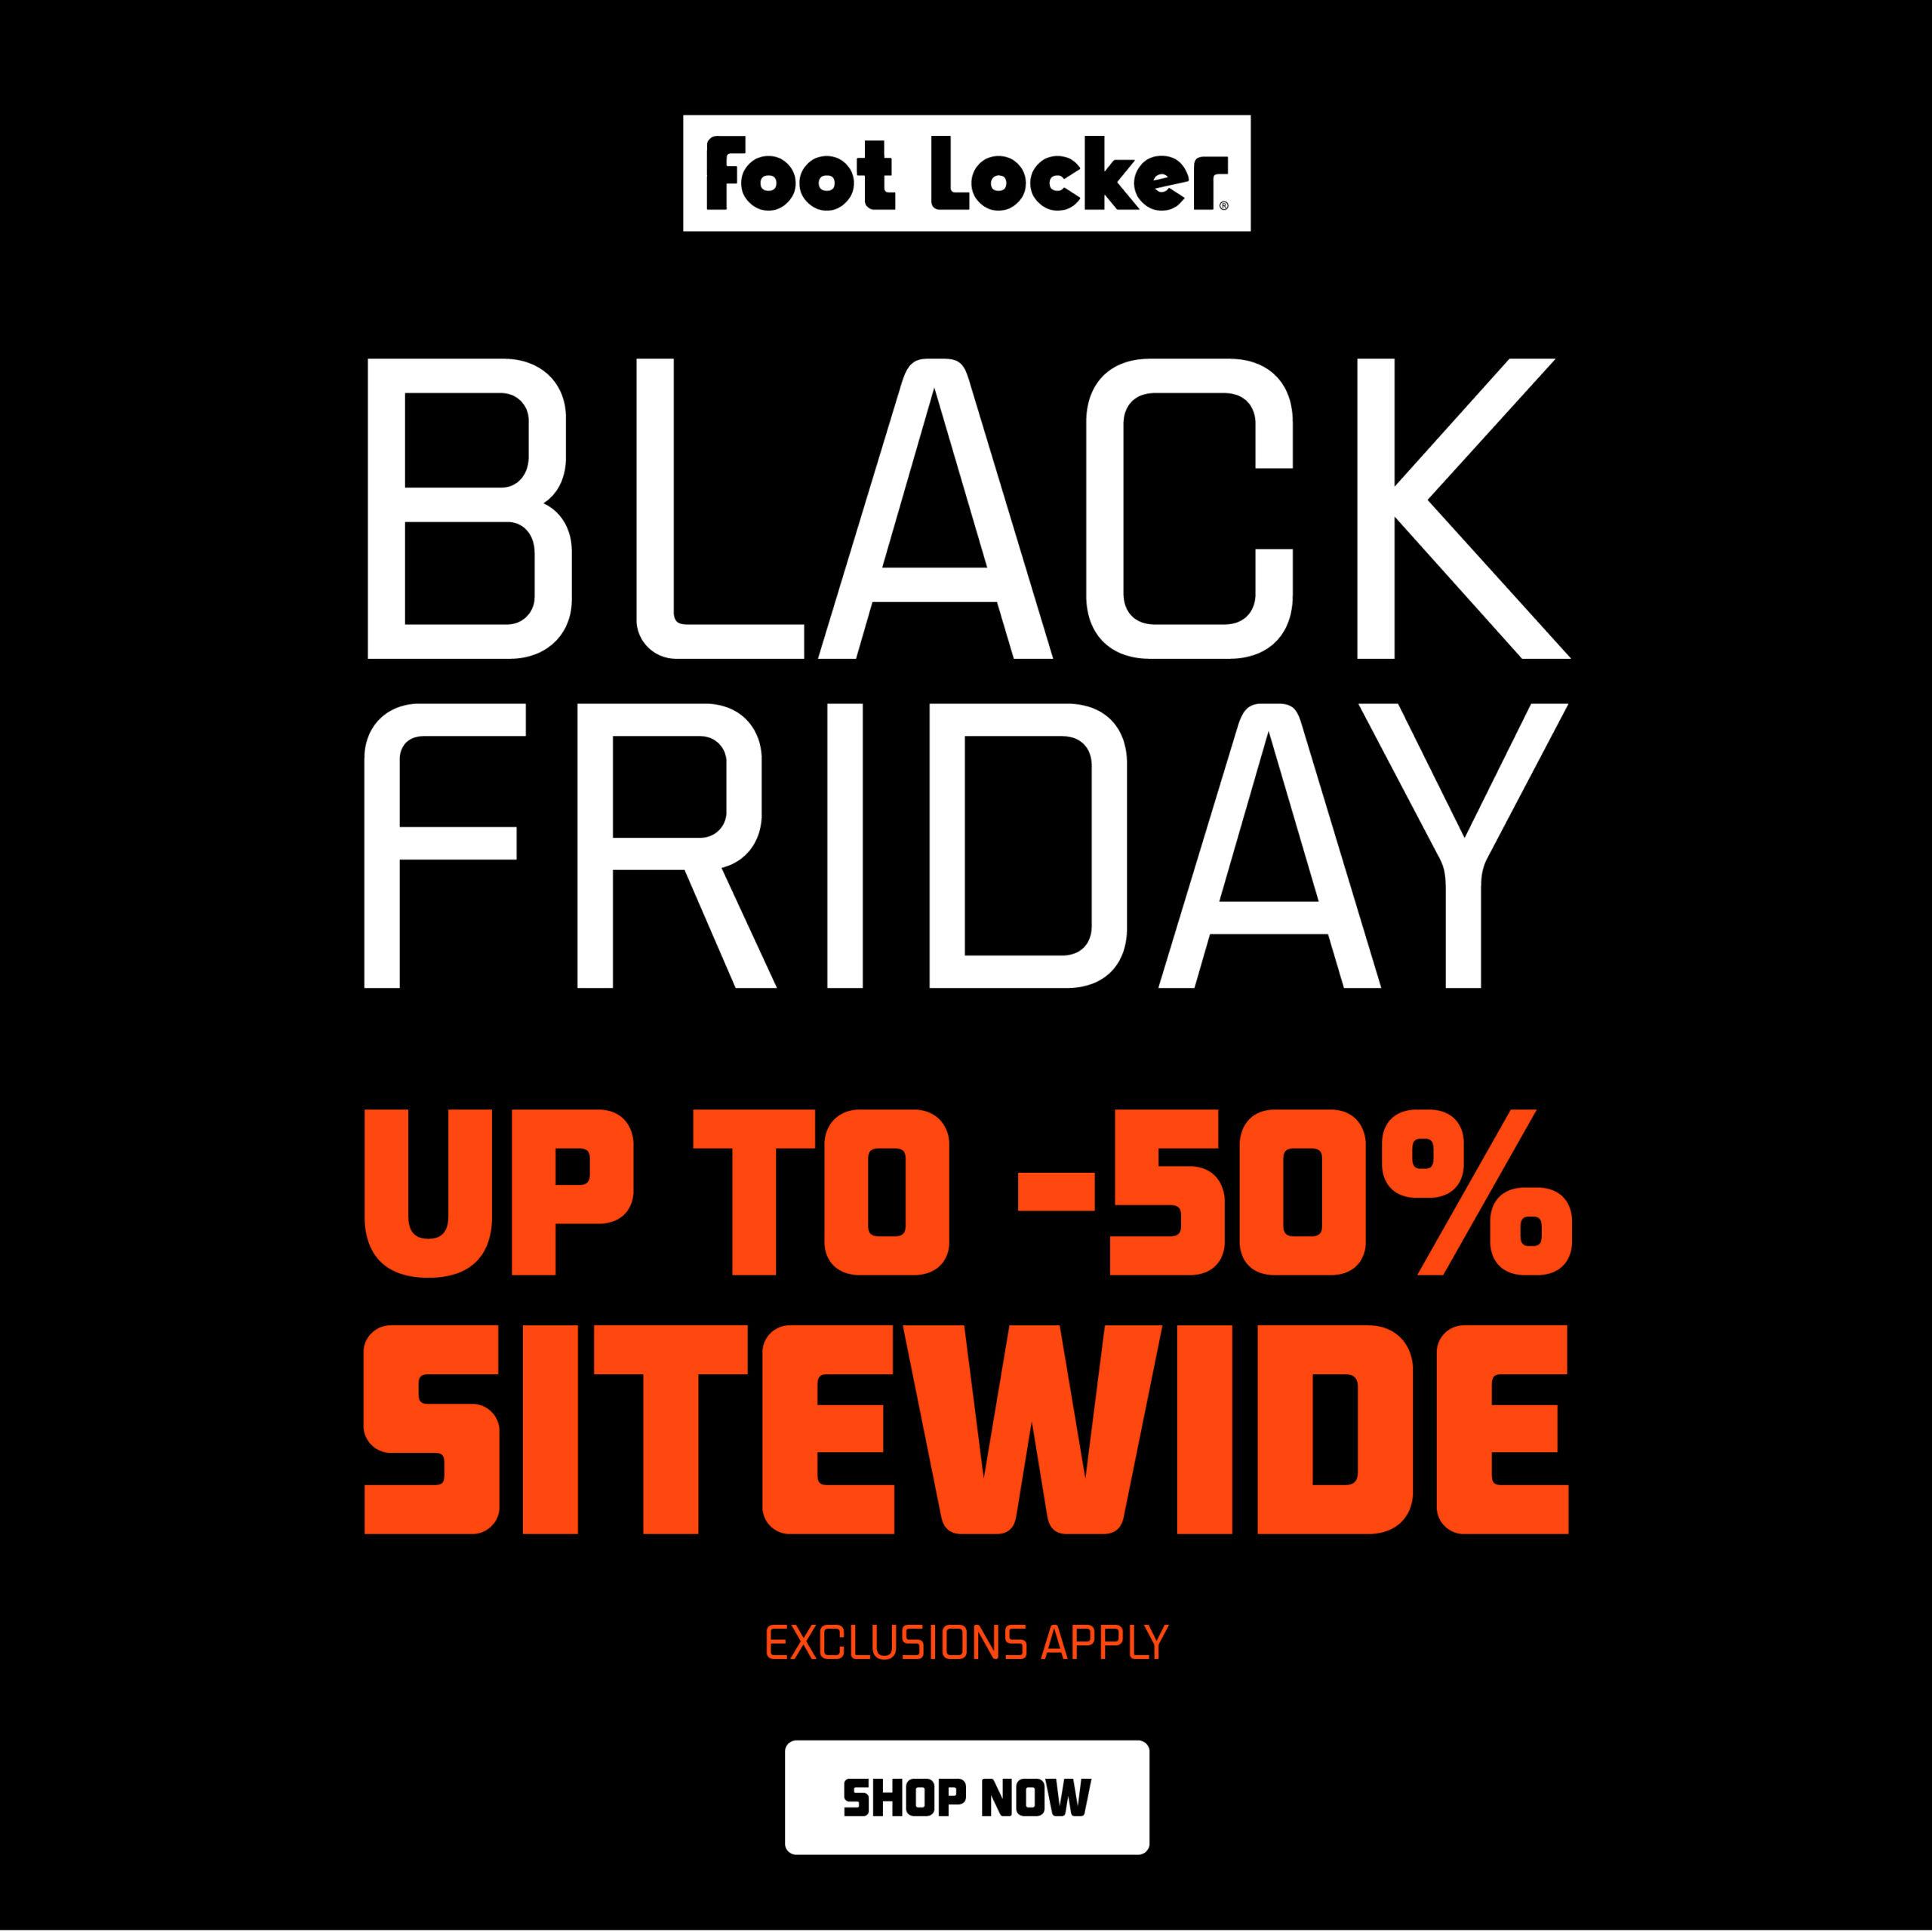 Der Black Friday Sale bei Foot Locker bietet 50 auf fast alles